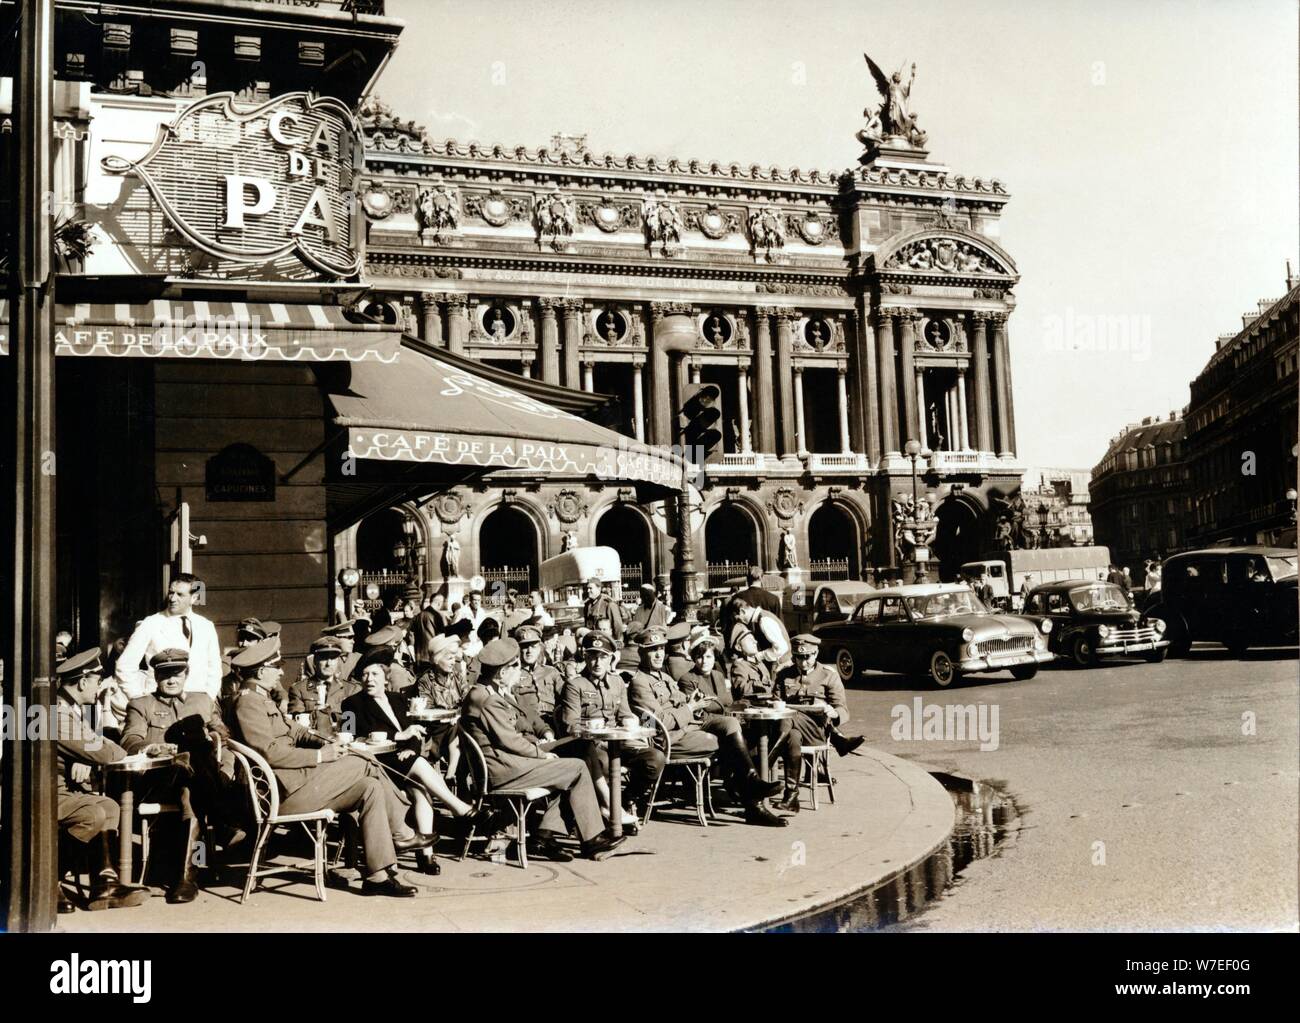 Les troupes allemandes d'occupation en dehors de la Café de la paix, Paris, la seconde guerre mondiale, c1940-c1944. Artiste : Inconnu Banque D'Images